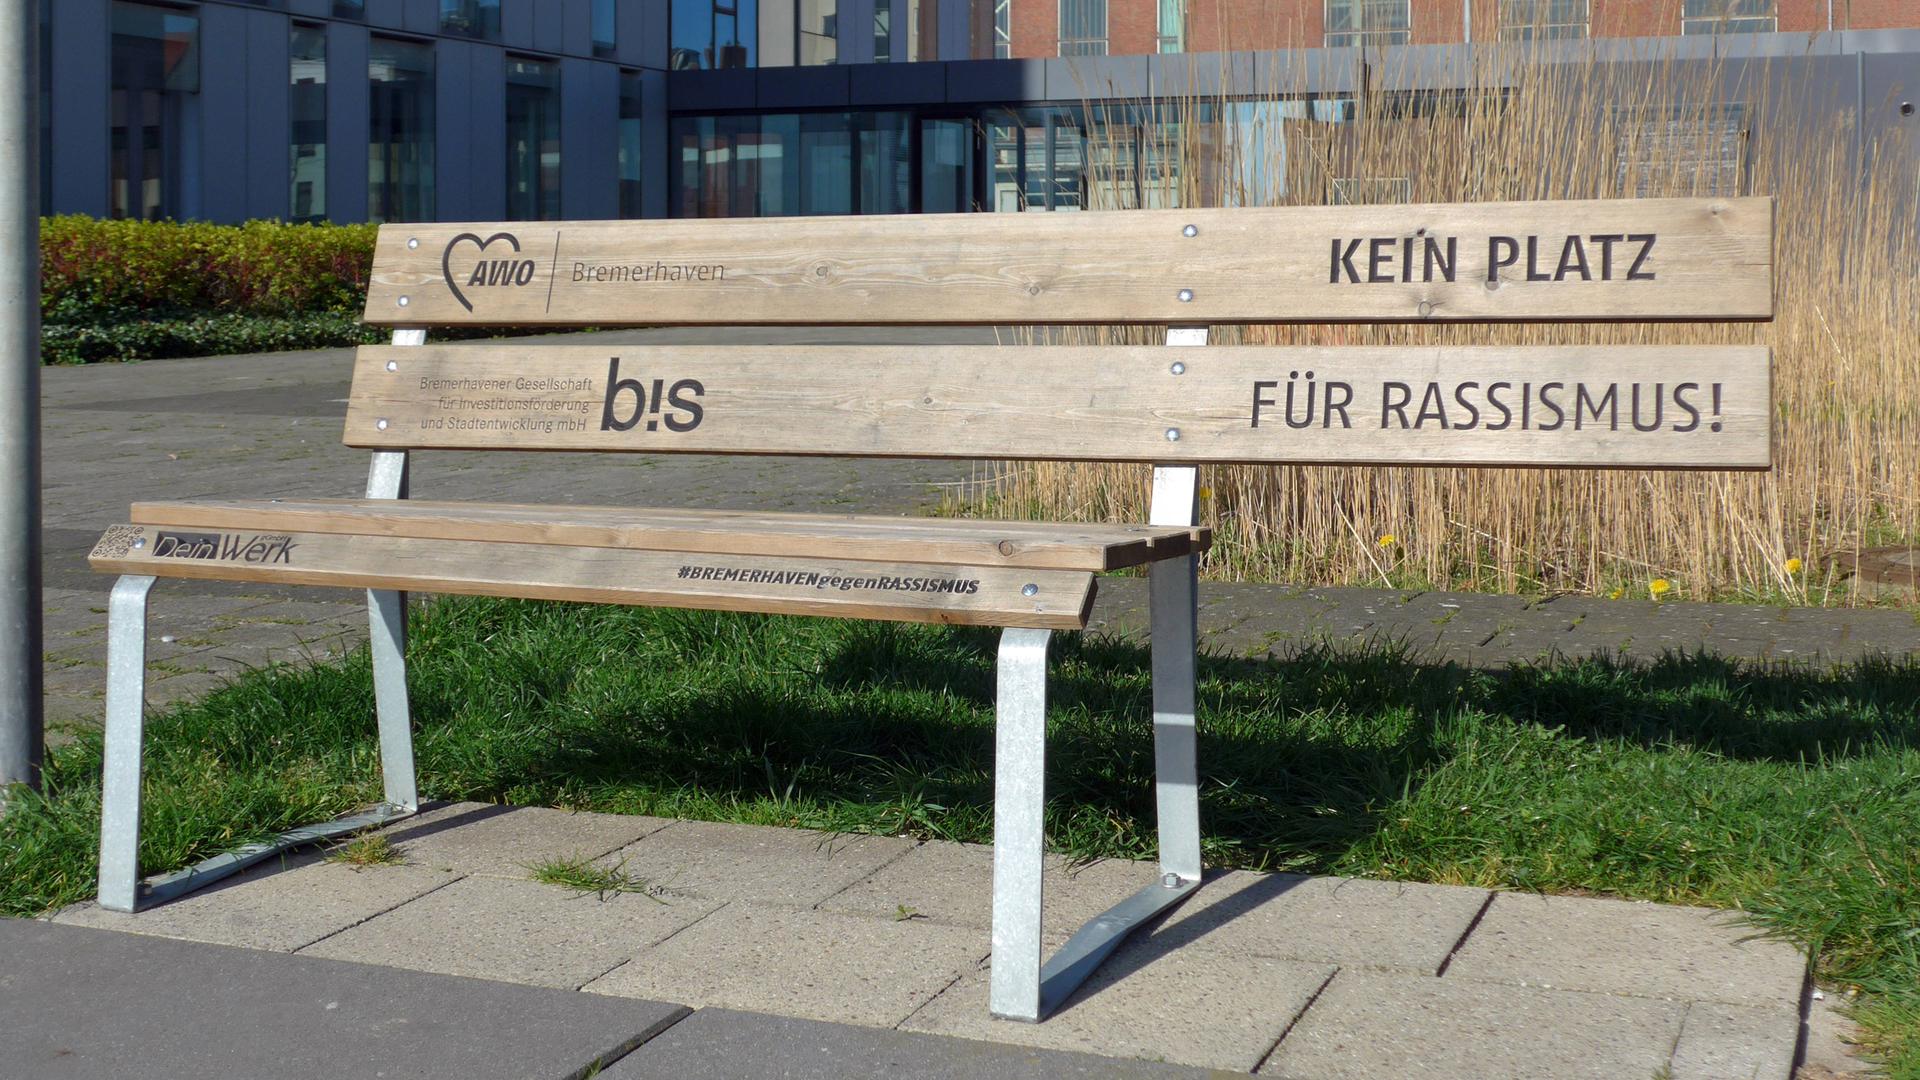 Die Rückenlehne einer Holzbank ragt über die Sitzfläche hinaus. Dort, wo niemand sitzen kann, steht auf der Lehne: "Kein Platz für Rassismus".